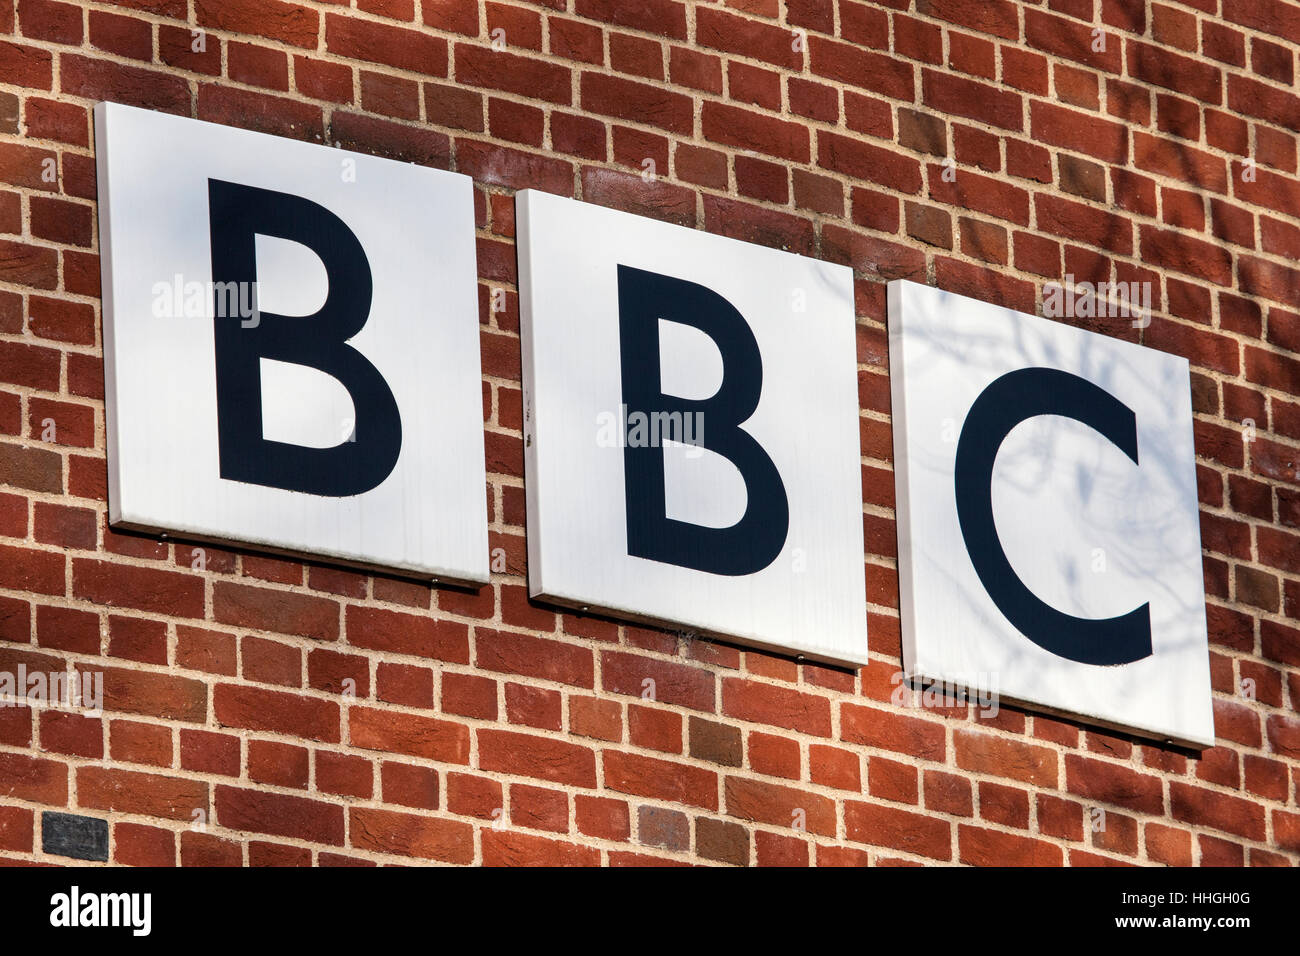 NORWICH, UK - 17 janvier 2017 : Le logo de la BBC sur l'extérieur de leur siège à l'Est de la BBC au Forum, à Norwich, Royaume-Uni. Banque D'Images